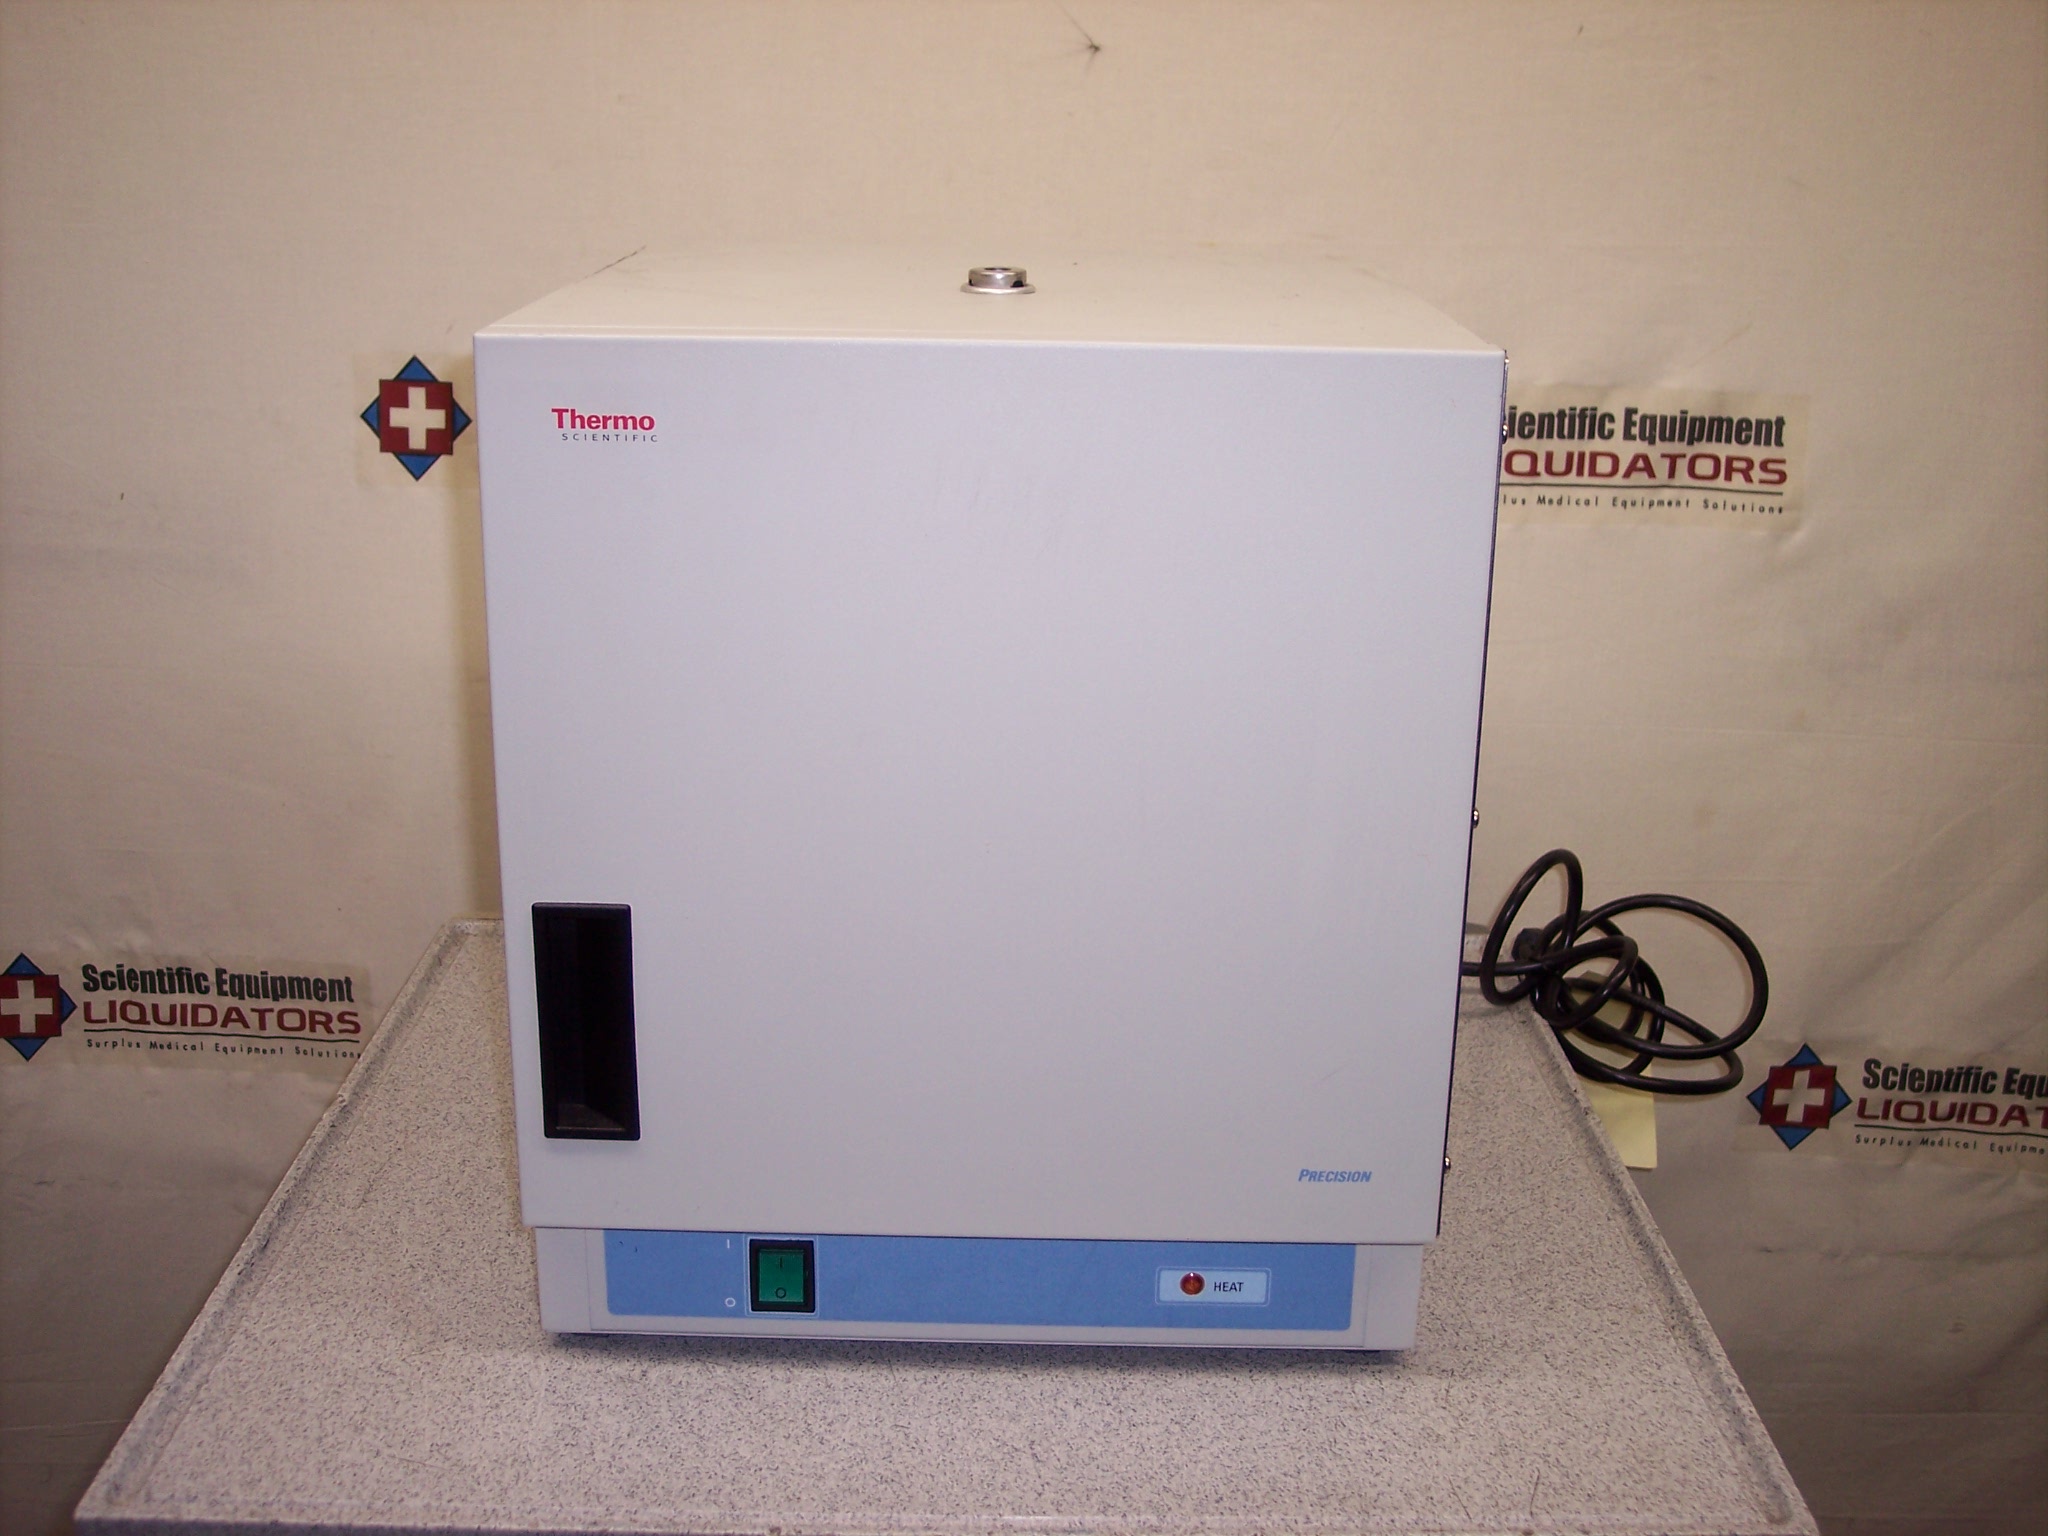 Thermo Precision120 Incubator